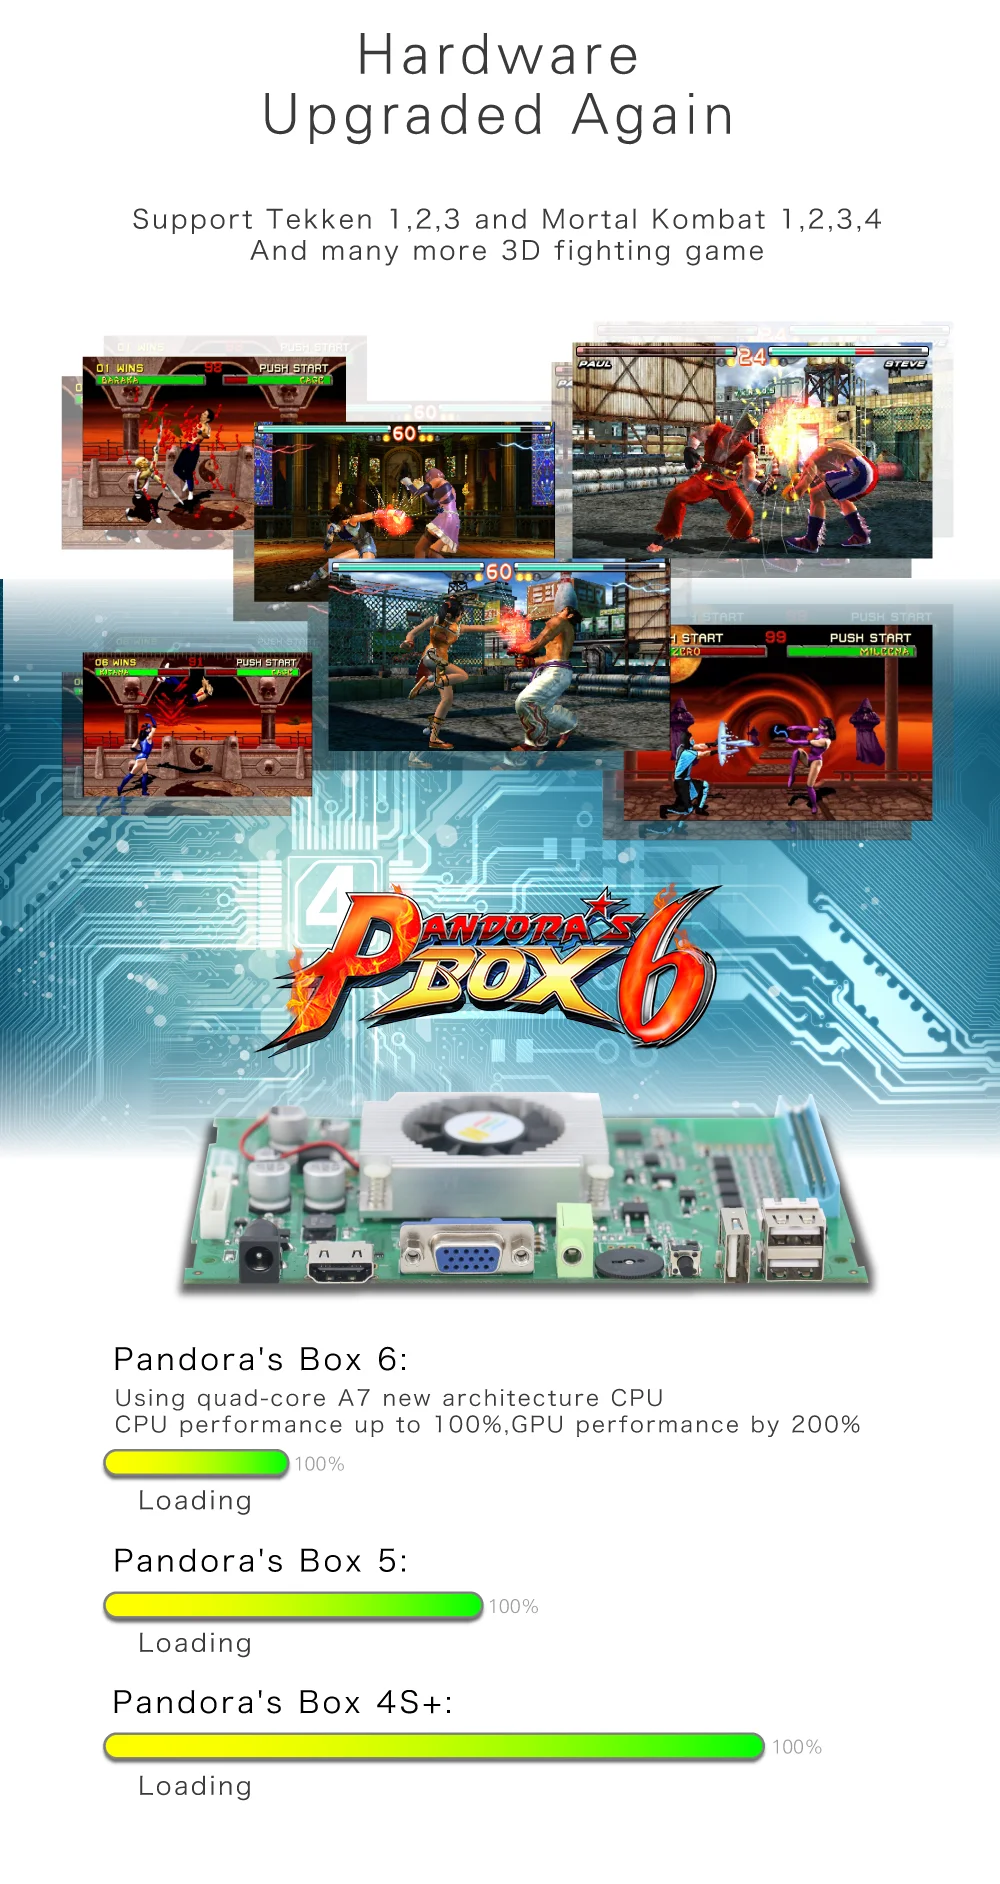 Pandora Box 6 VGA и HDMI выход семейная версия 1300 в 1 Jamma мульти-игра доска оригинальная Pandora's Box 6 устройство с аркадными играми